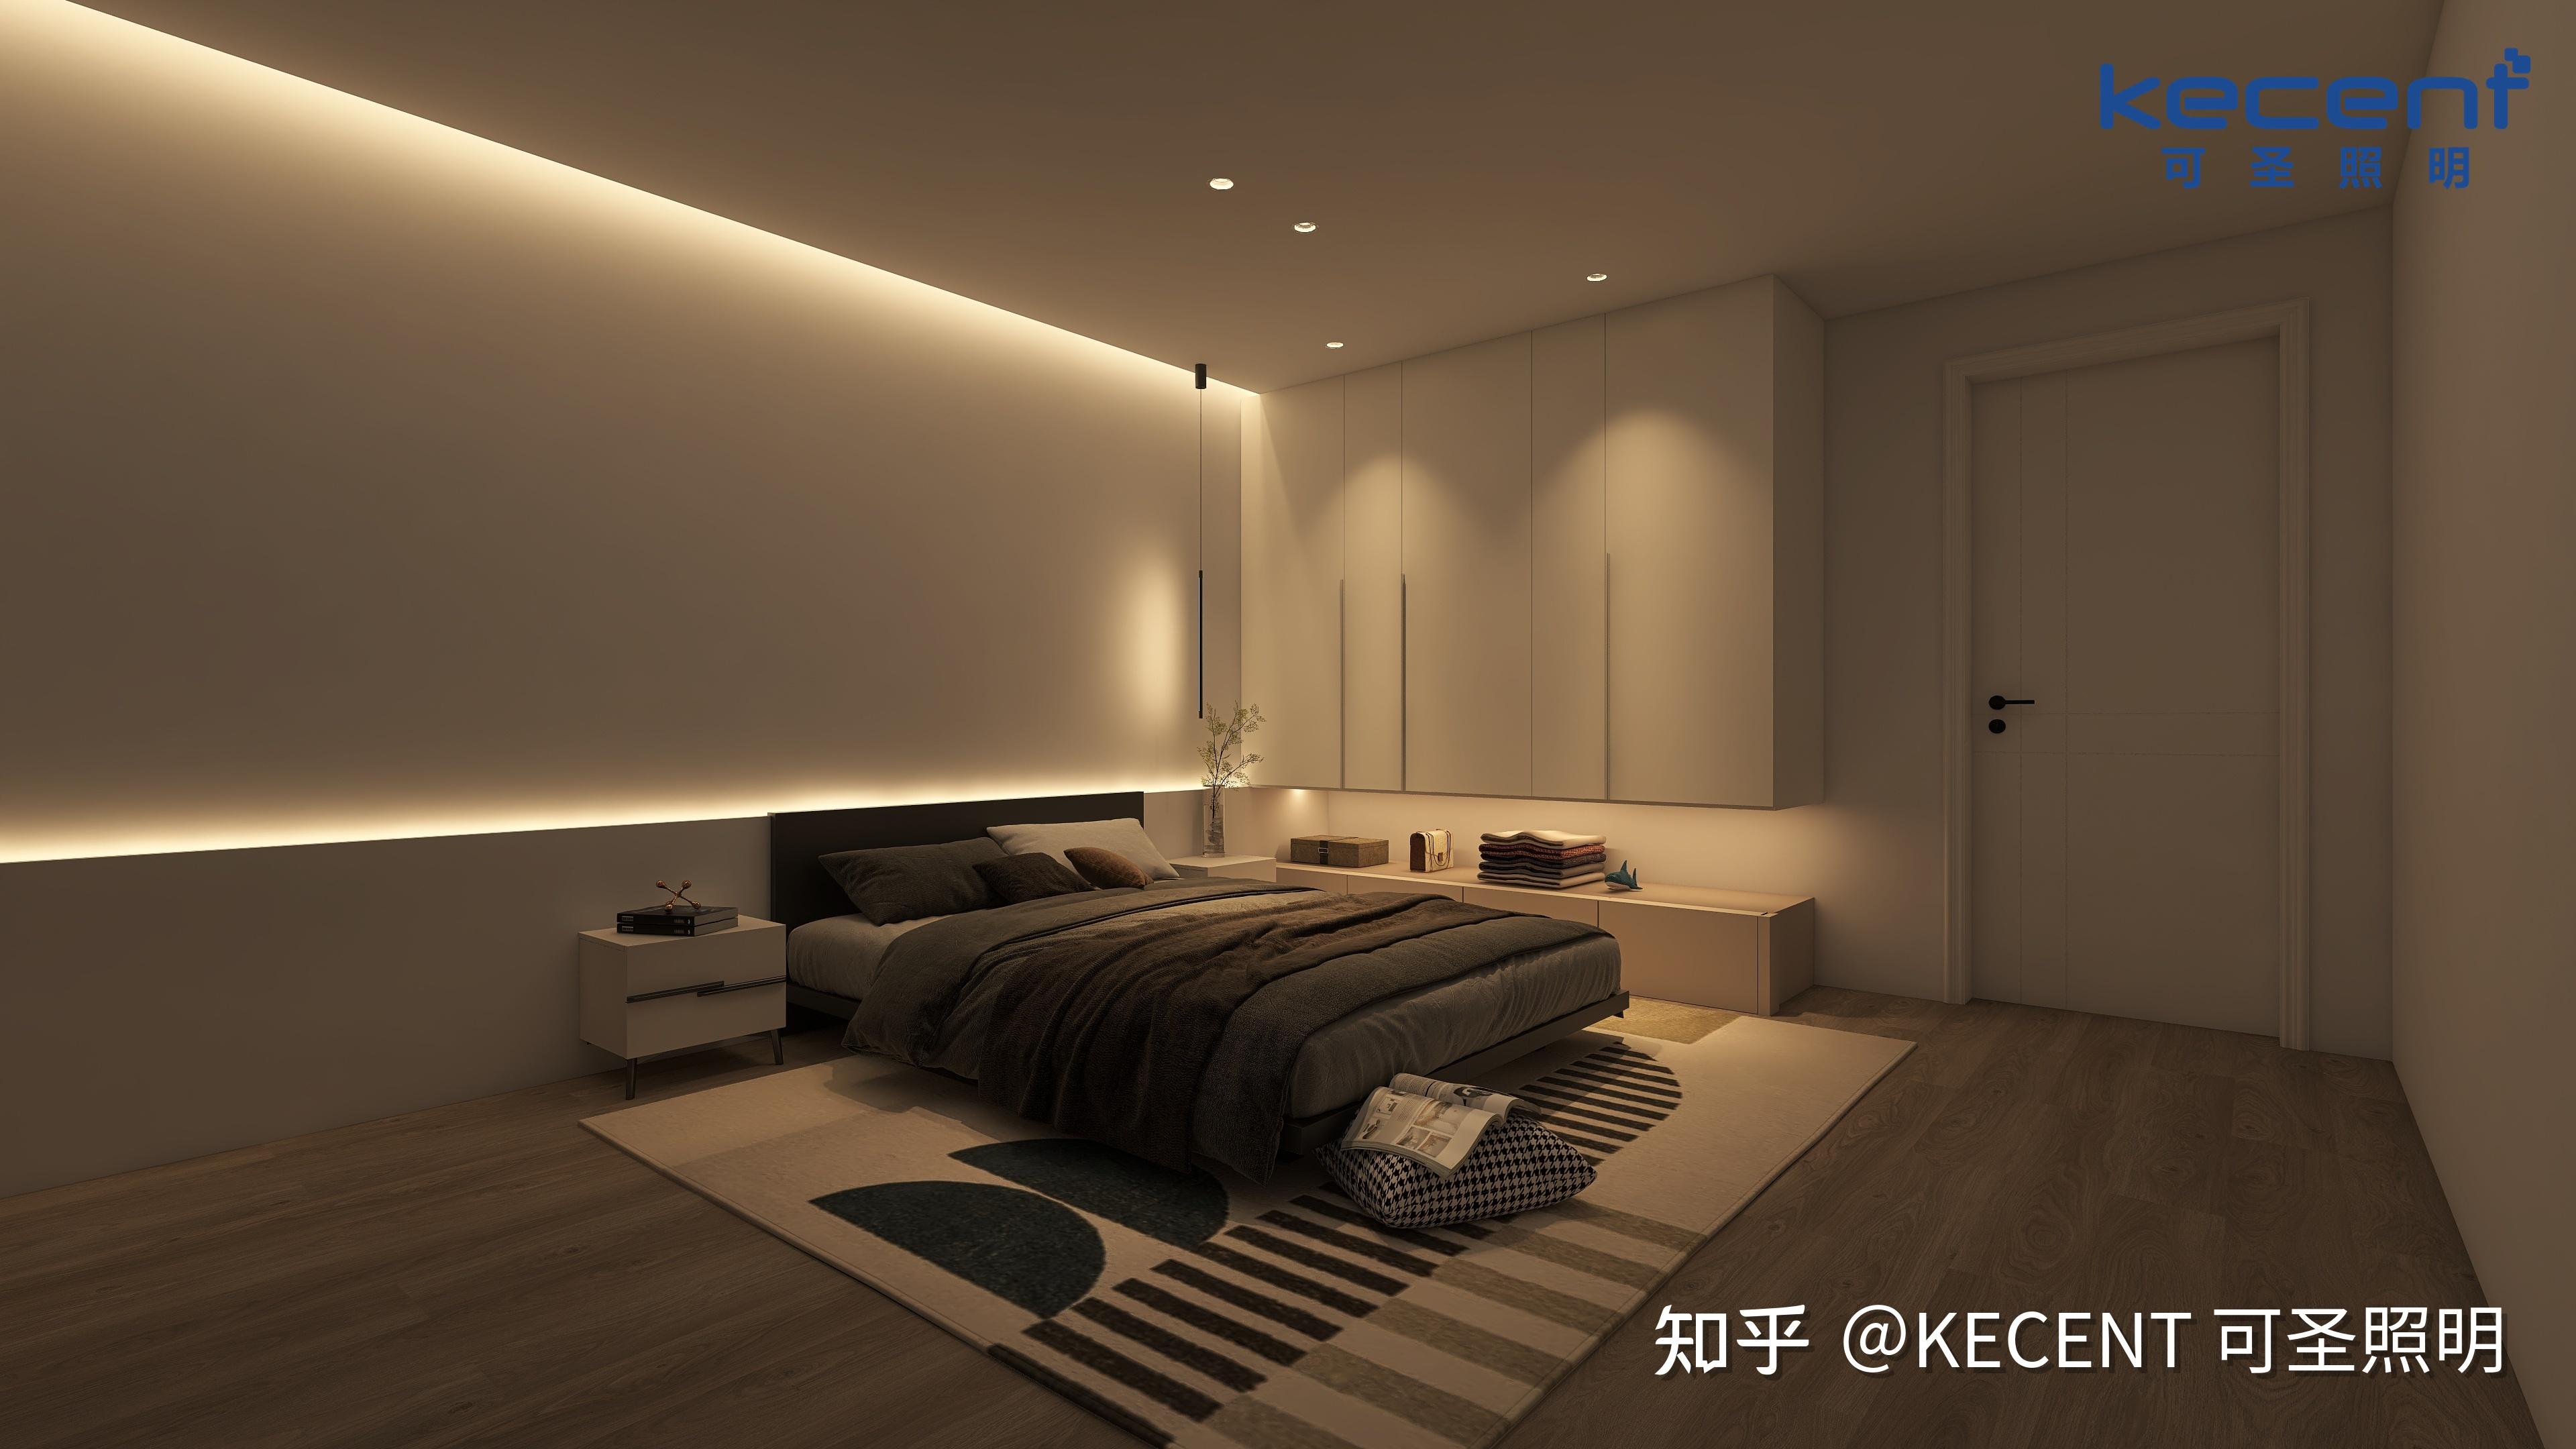 想要睡眠质量好 卧室灯光就交由kecent可圣照明来设计吧!